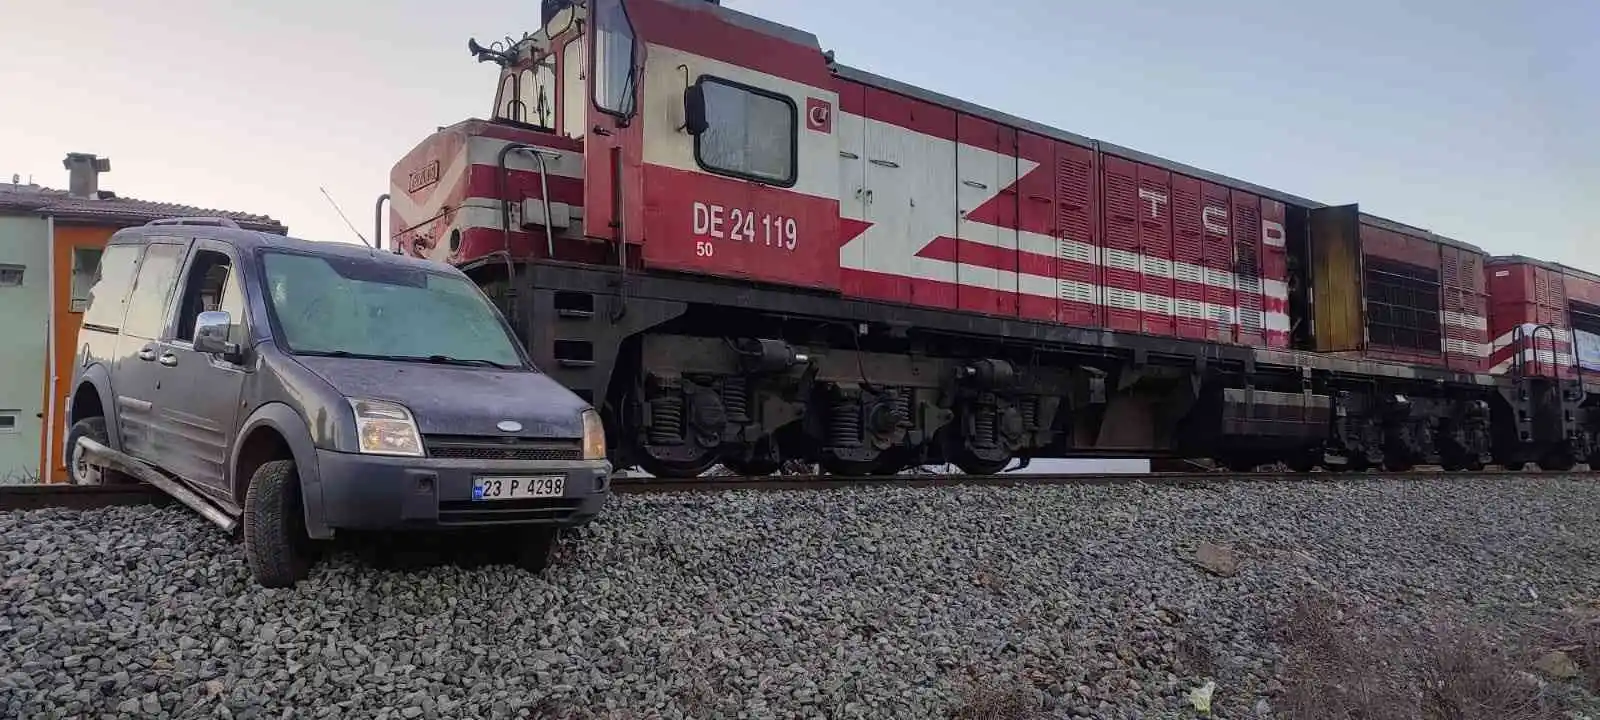 Elazığ’da trenin araca çarptığı kazanın görüntüleri ortaya çıktı
